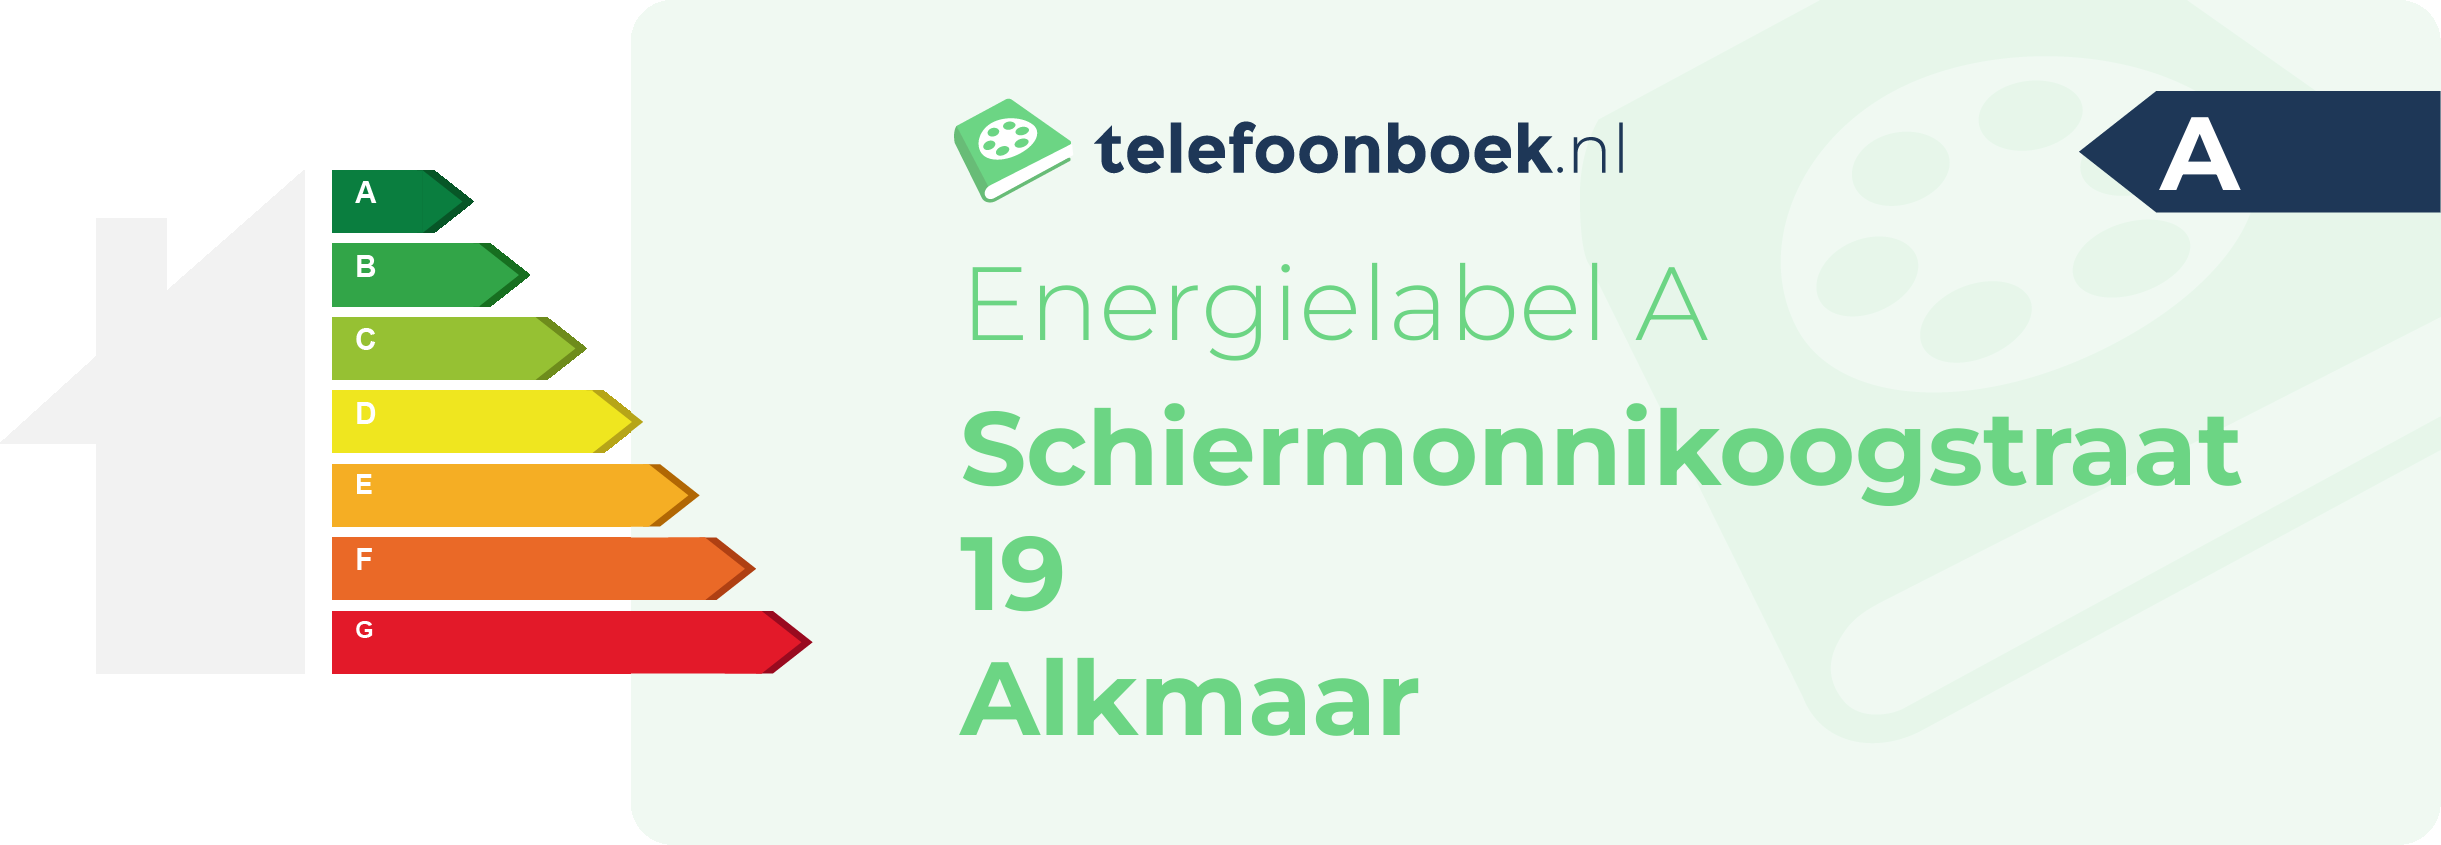 Energielabel Schiermonnikoogstraat 19 Alkmaar